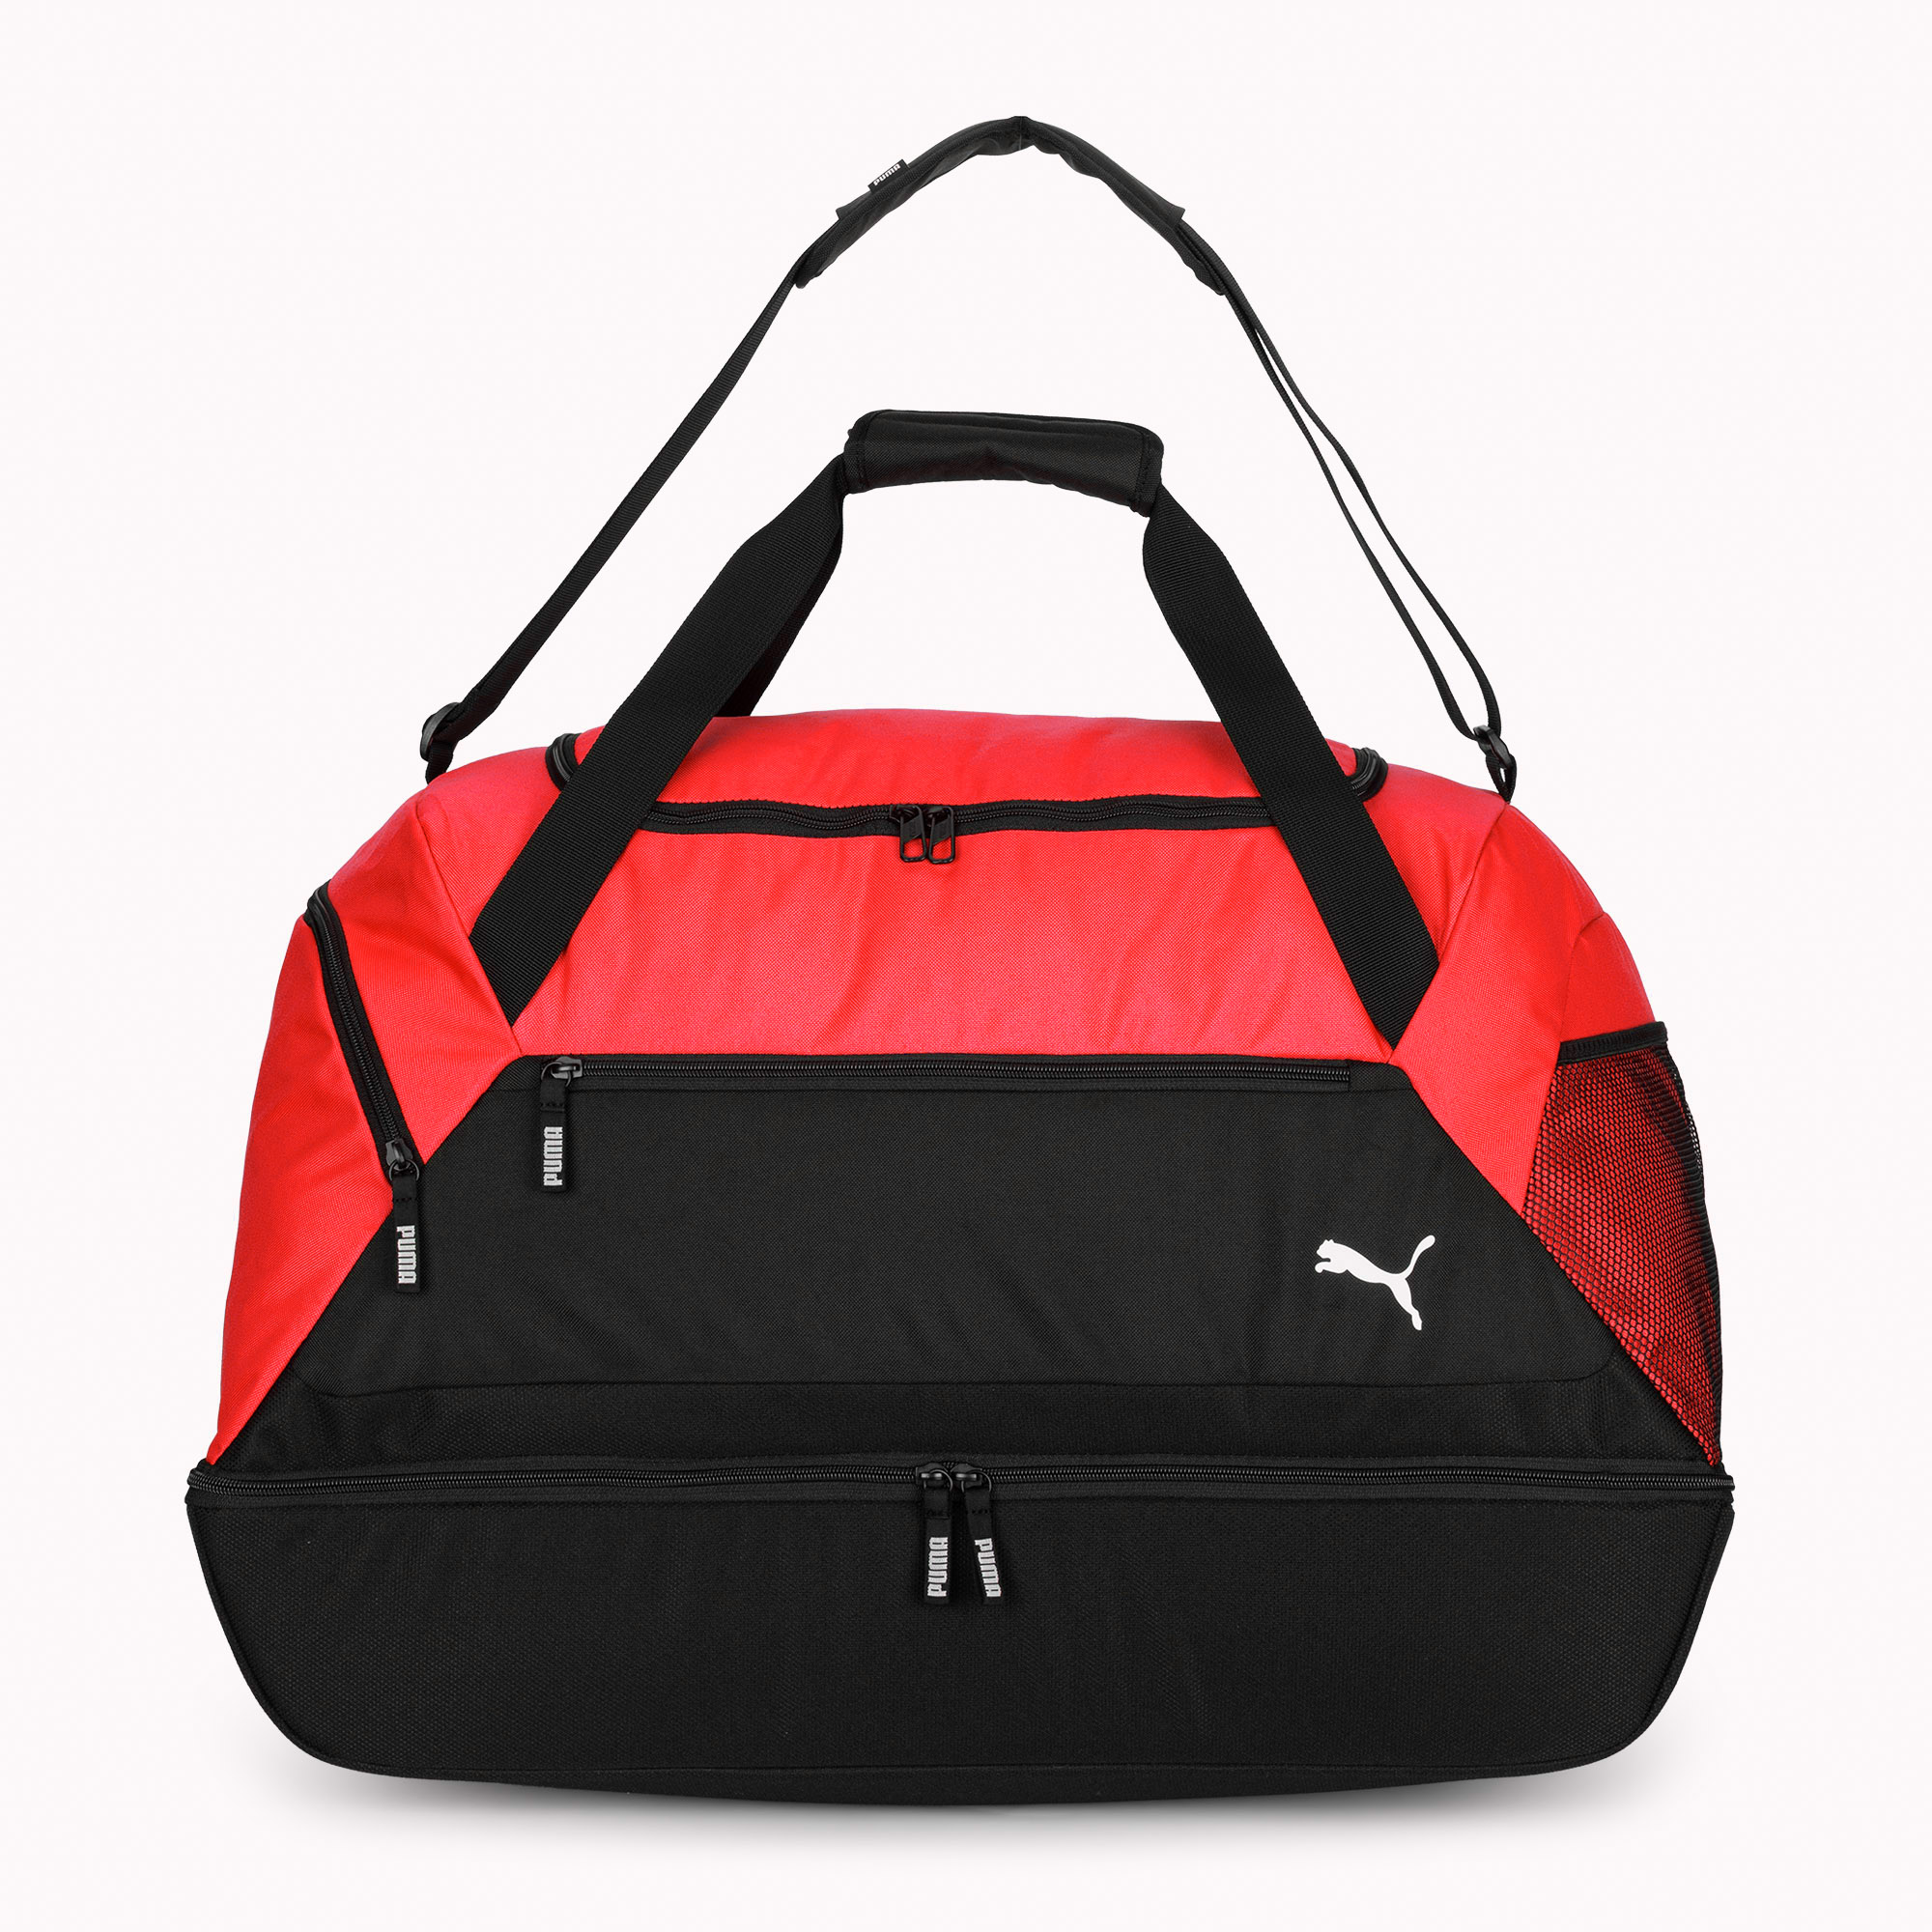 Чанта за тренировки PUMA Teamgoal (отделение за обувки) puma red/puma black